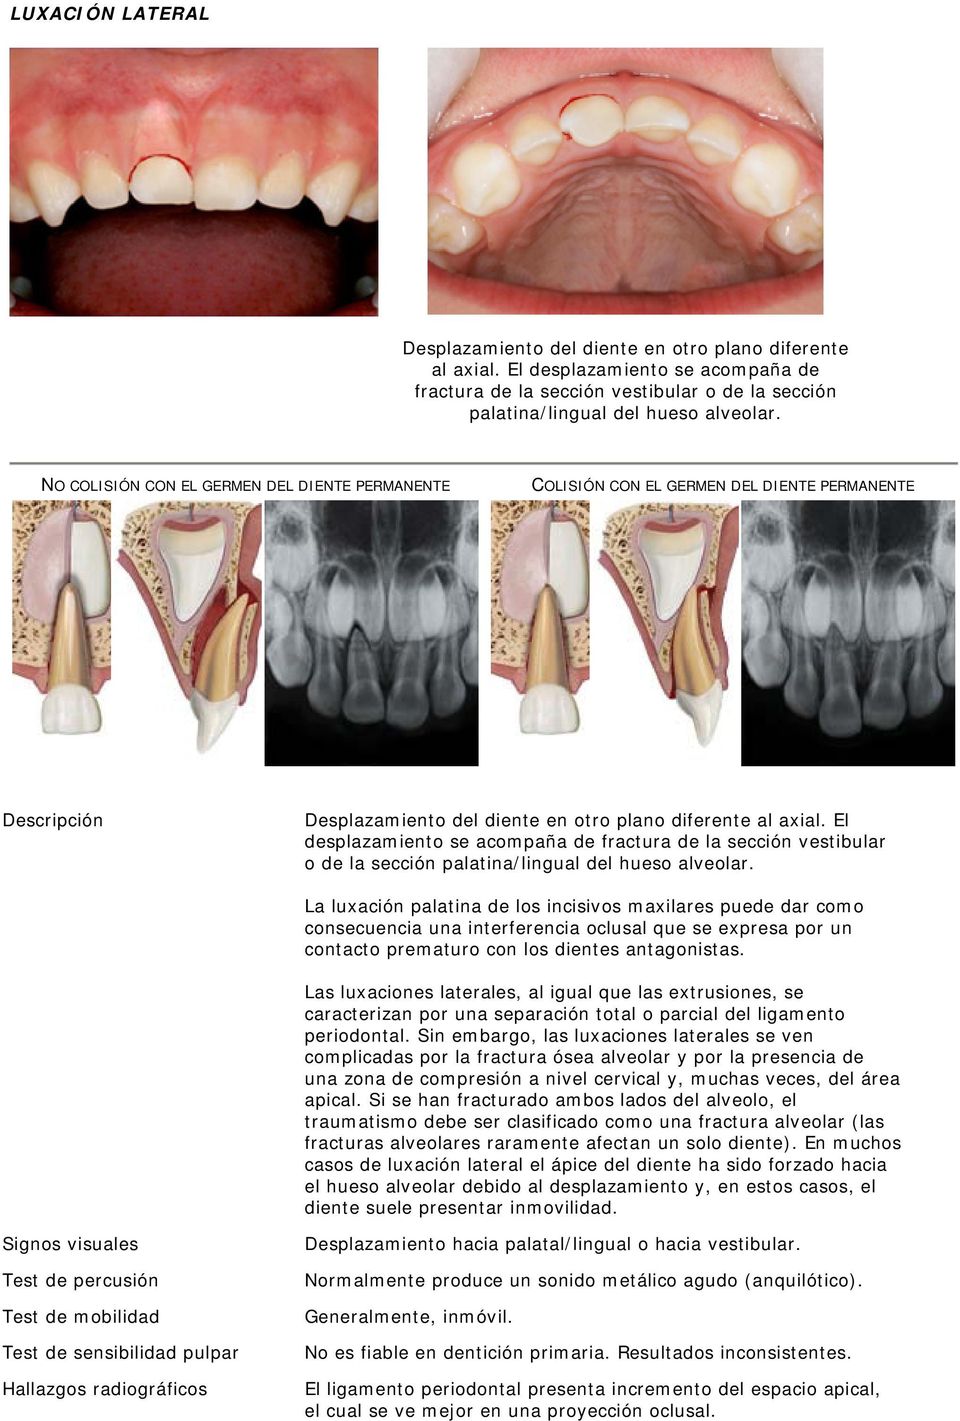 El desplazamiento se acompaña de fractura de la sección vestibular o de la sección palatina/lingual del hueso alveolar.